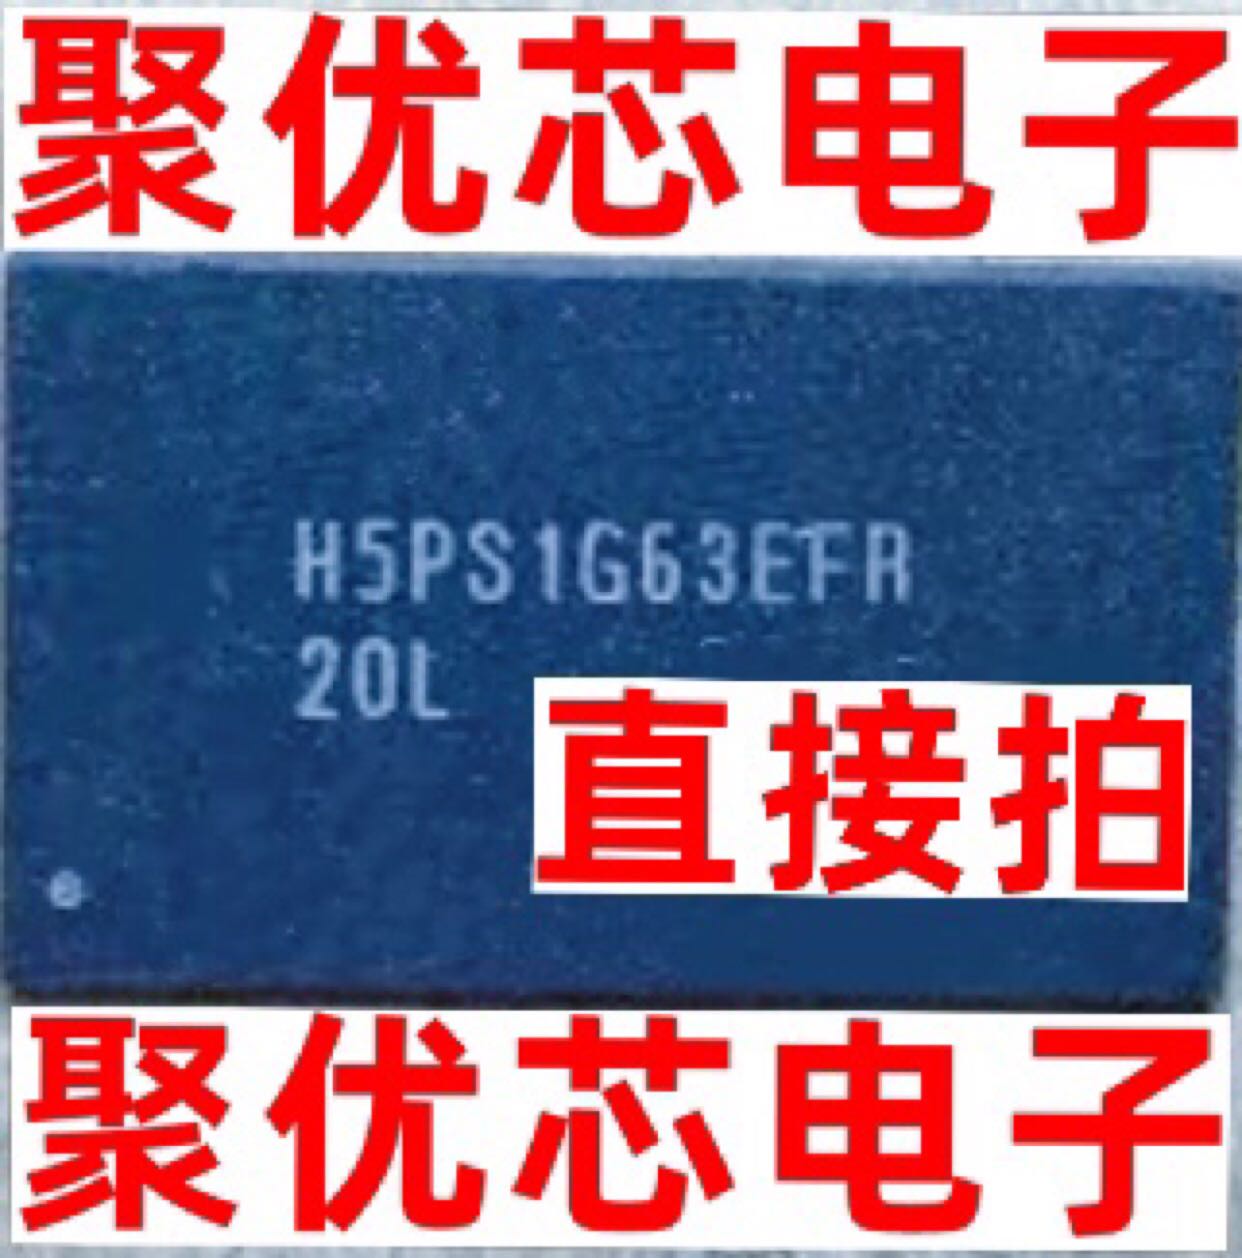 H5PS1G63EFR-S6C -20L -Y5C -G7C BGA84 Ic